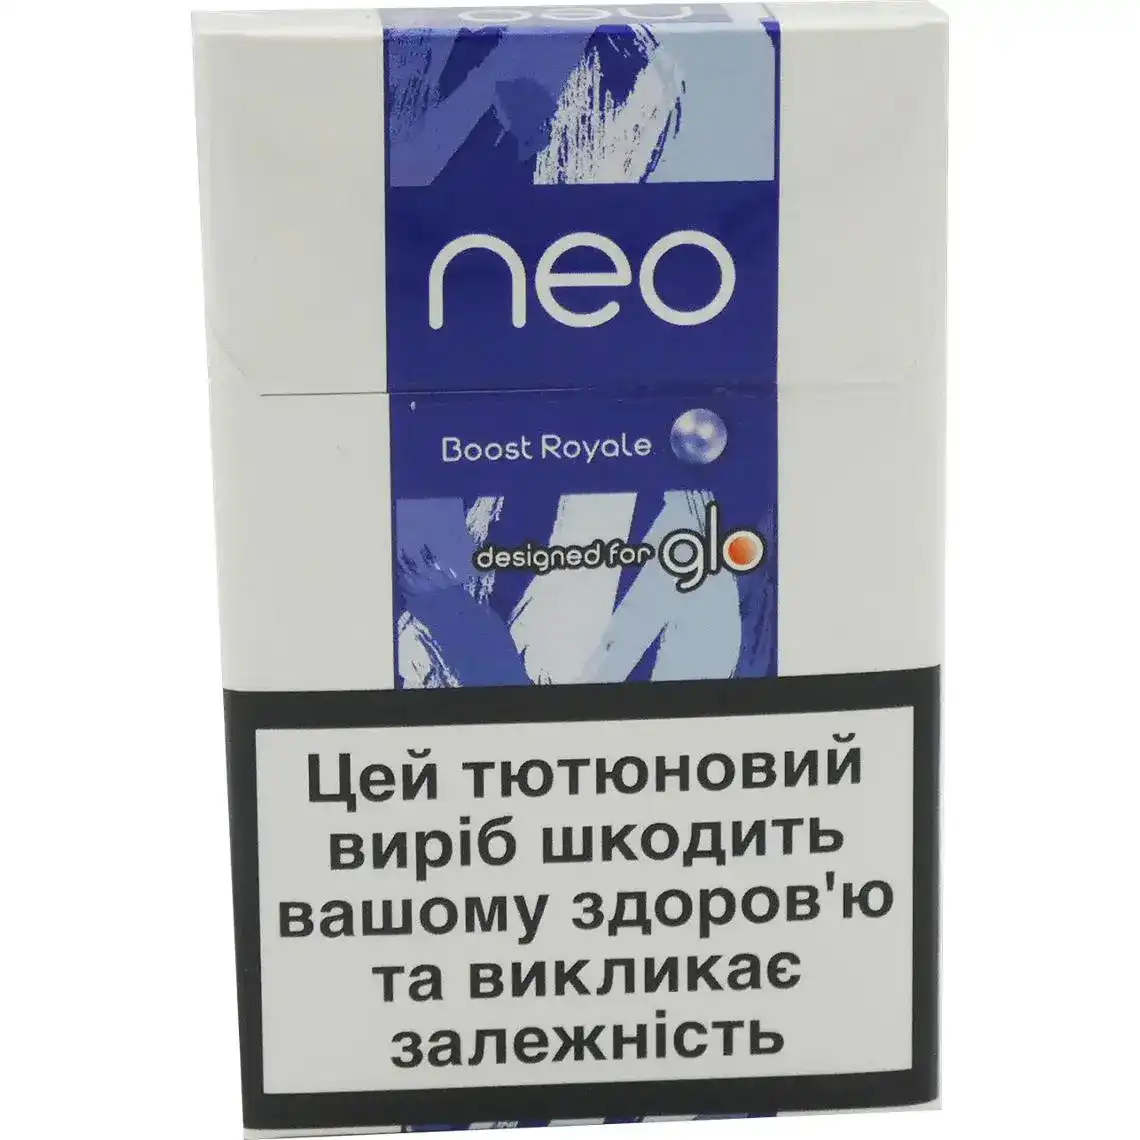 Стіки для нагрівання тютюну Neo Boost Royale 20 шт.